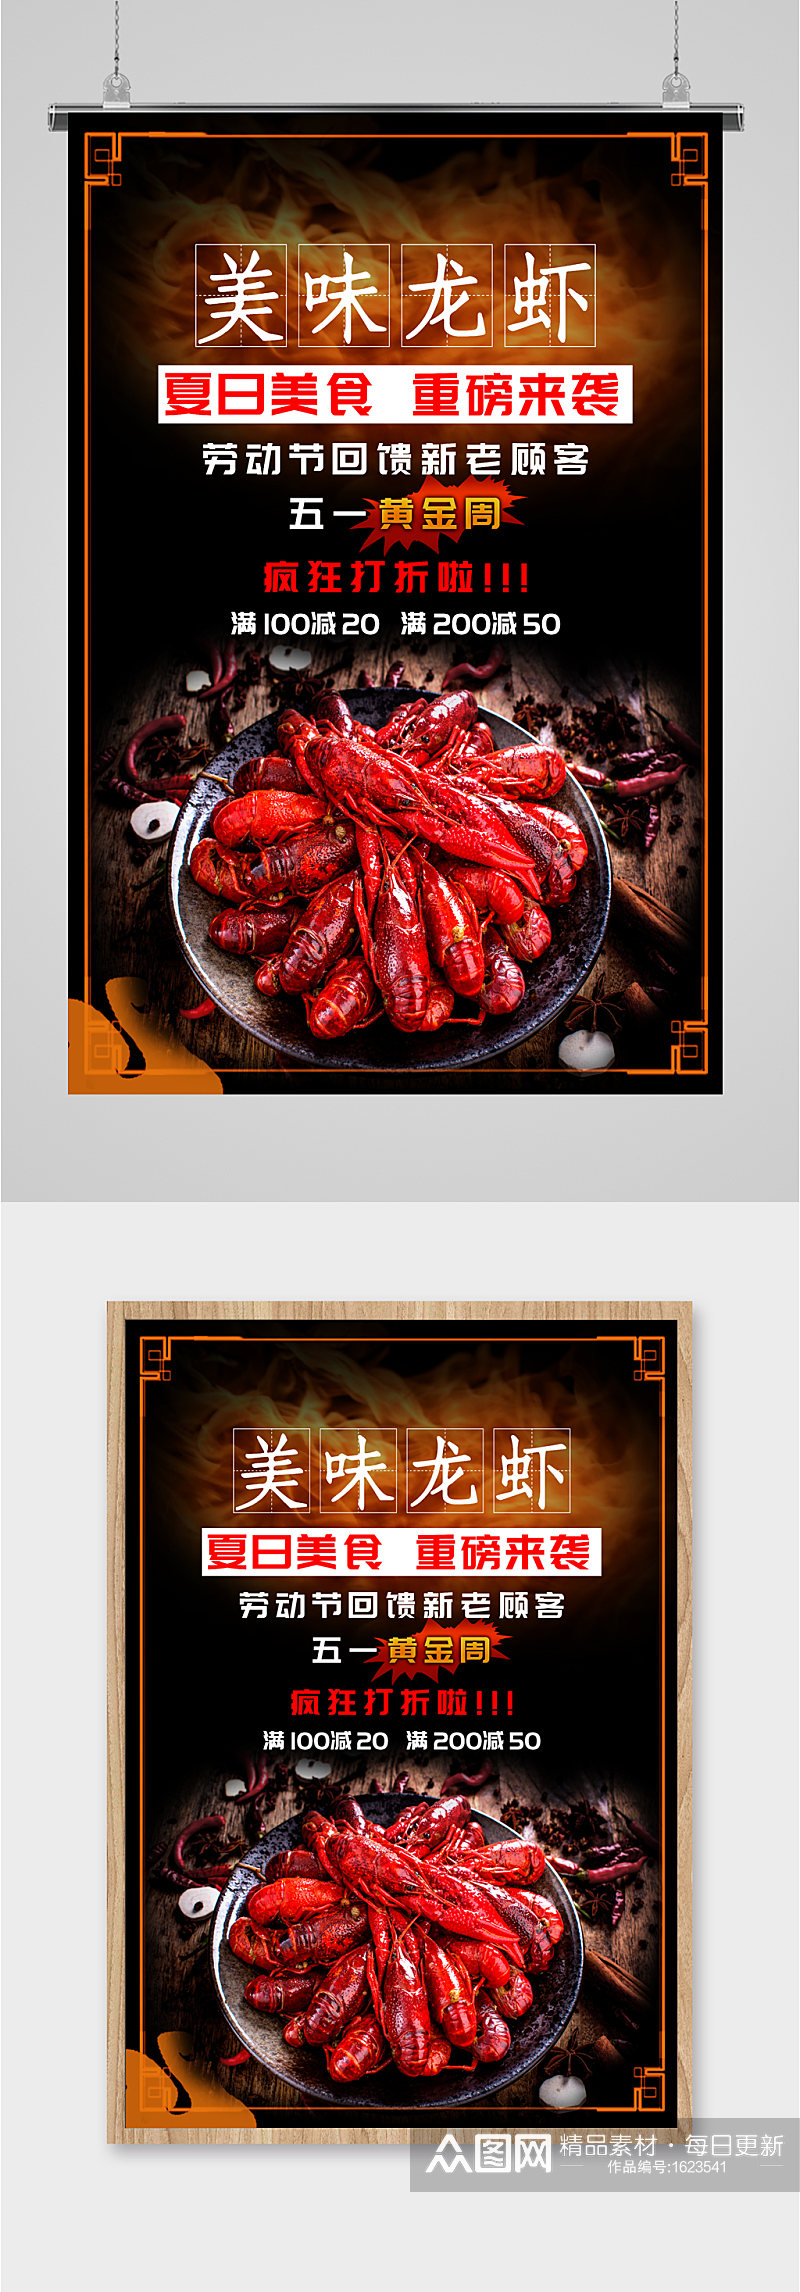 特色美味龙虾宣传海报素材